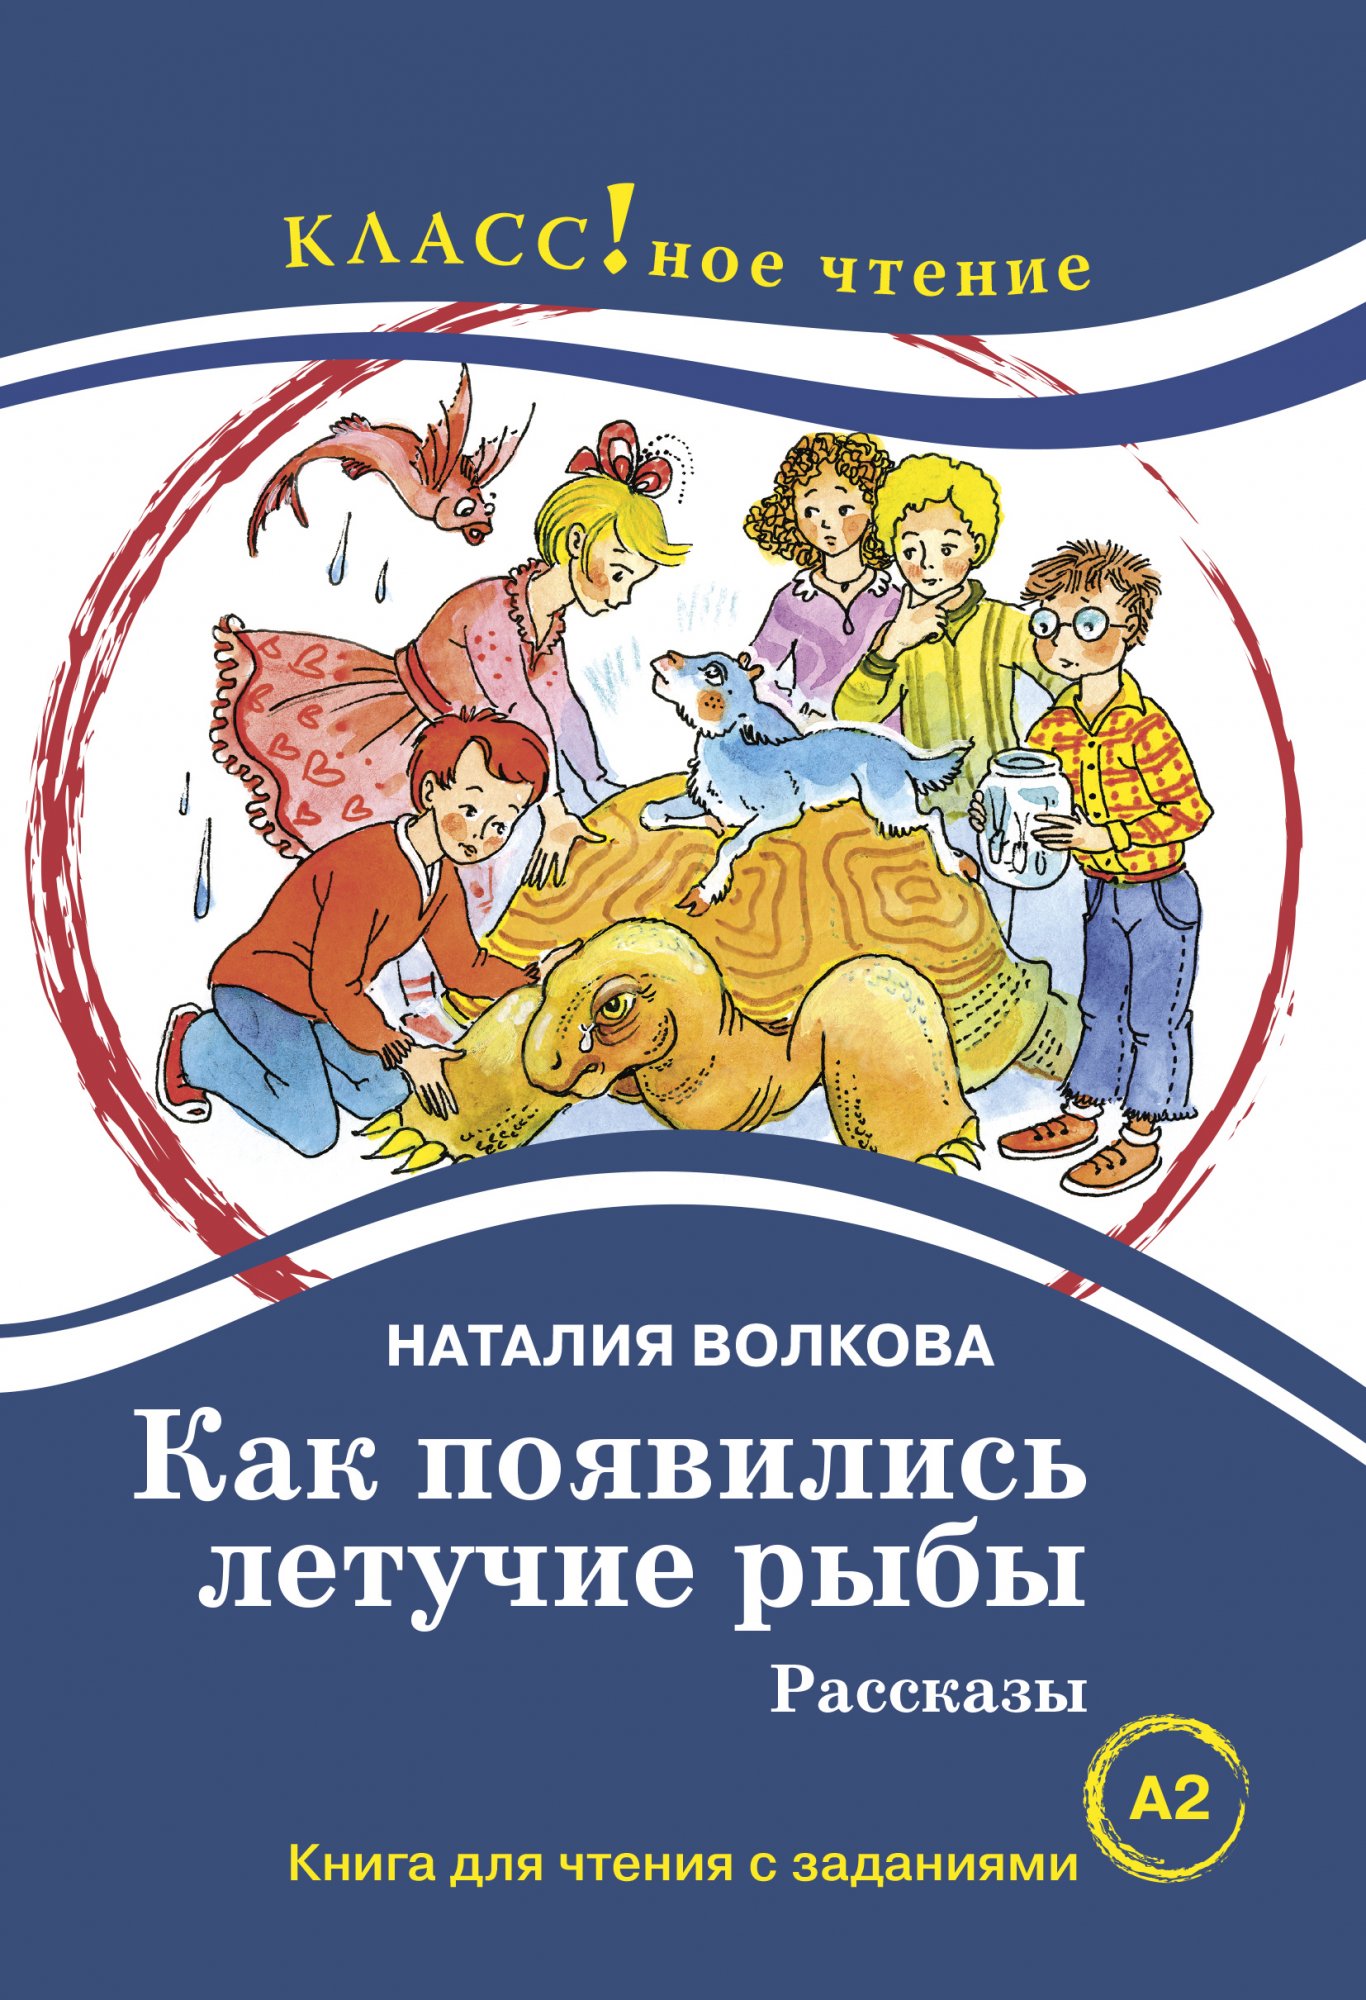 語学（教材と研究） ロシア語書店日ソ(ロシア・CIS諸国の本と雑誌、CD